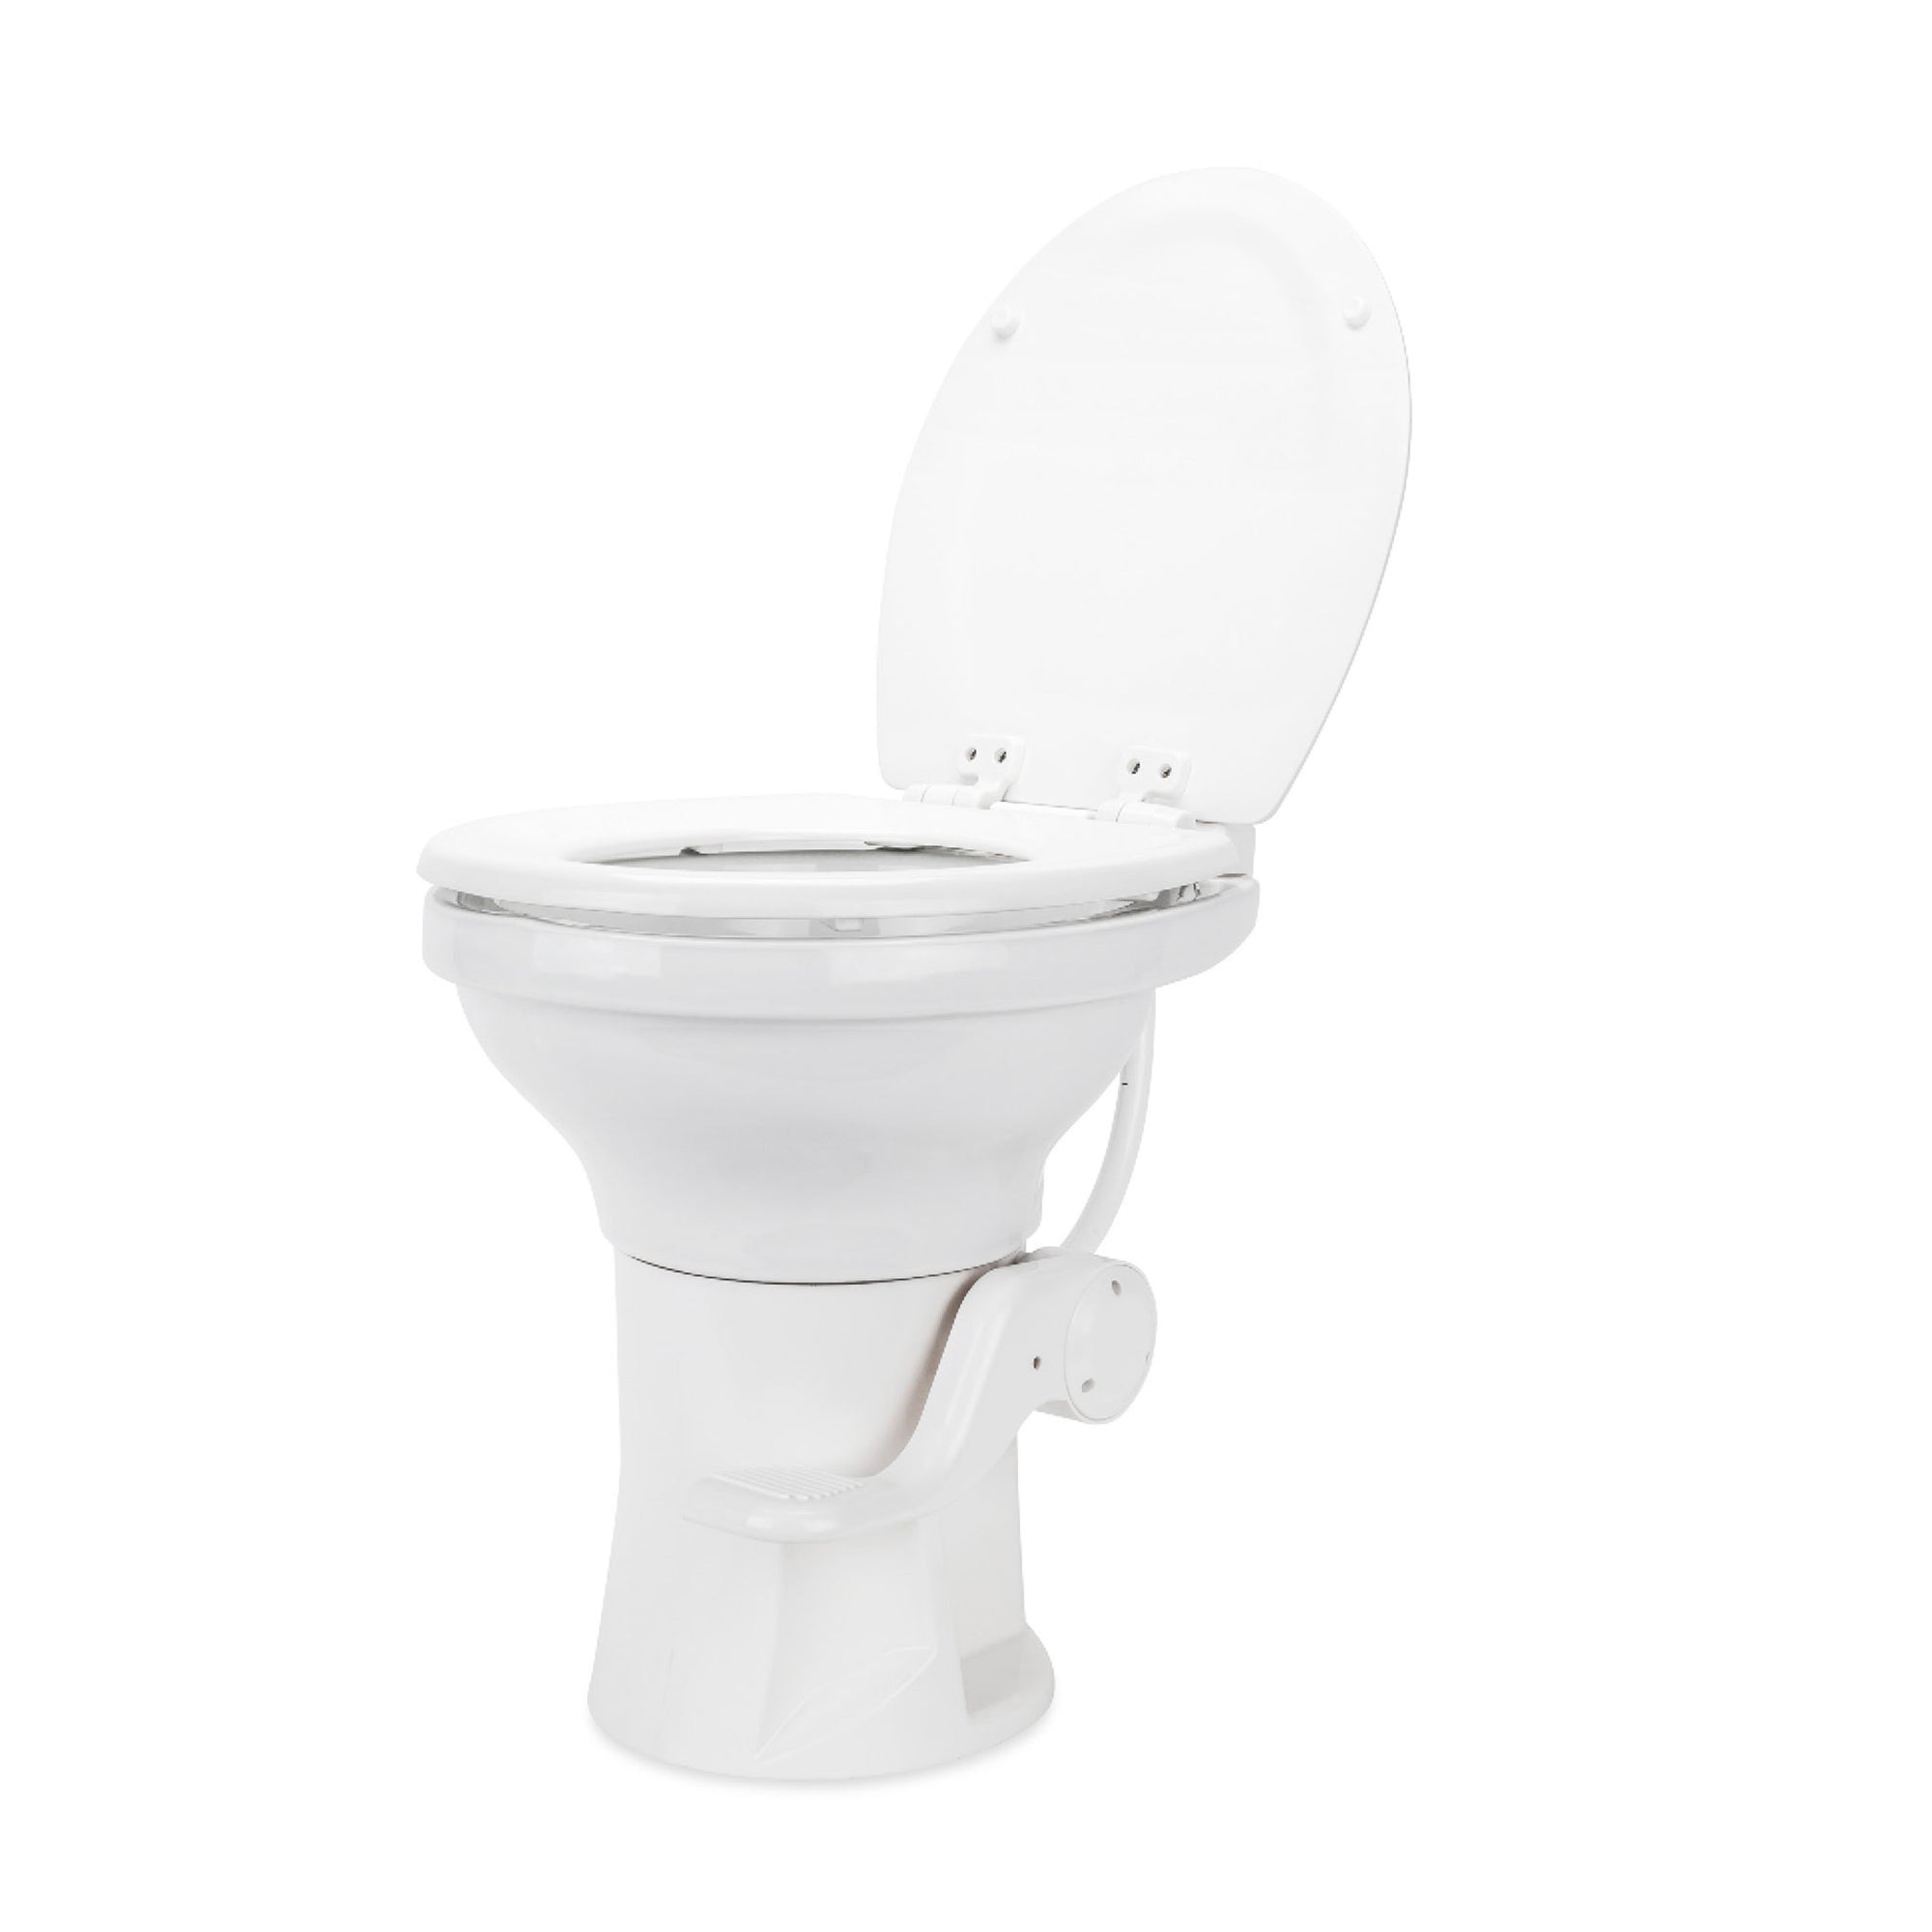 Camco 41710 Premium Ceramic RV Toilet with Ergonomic Design - White